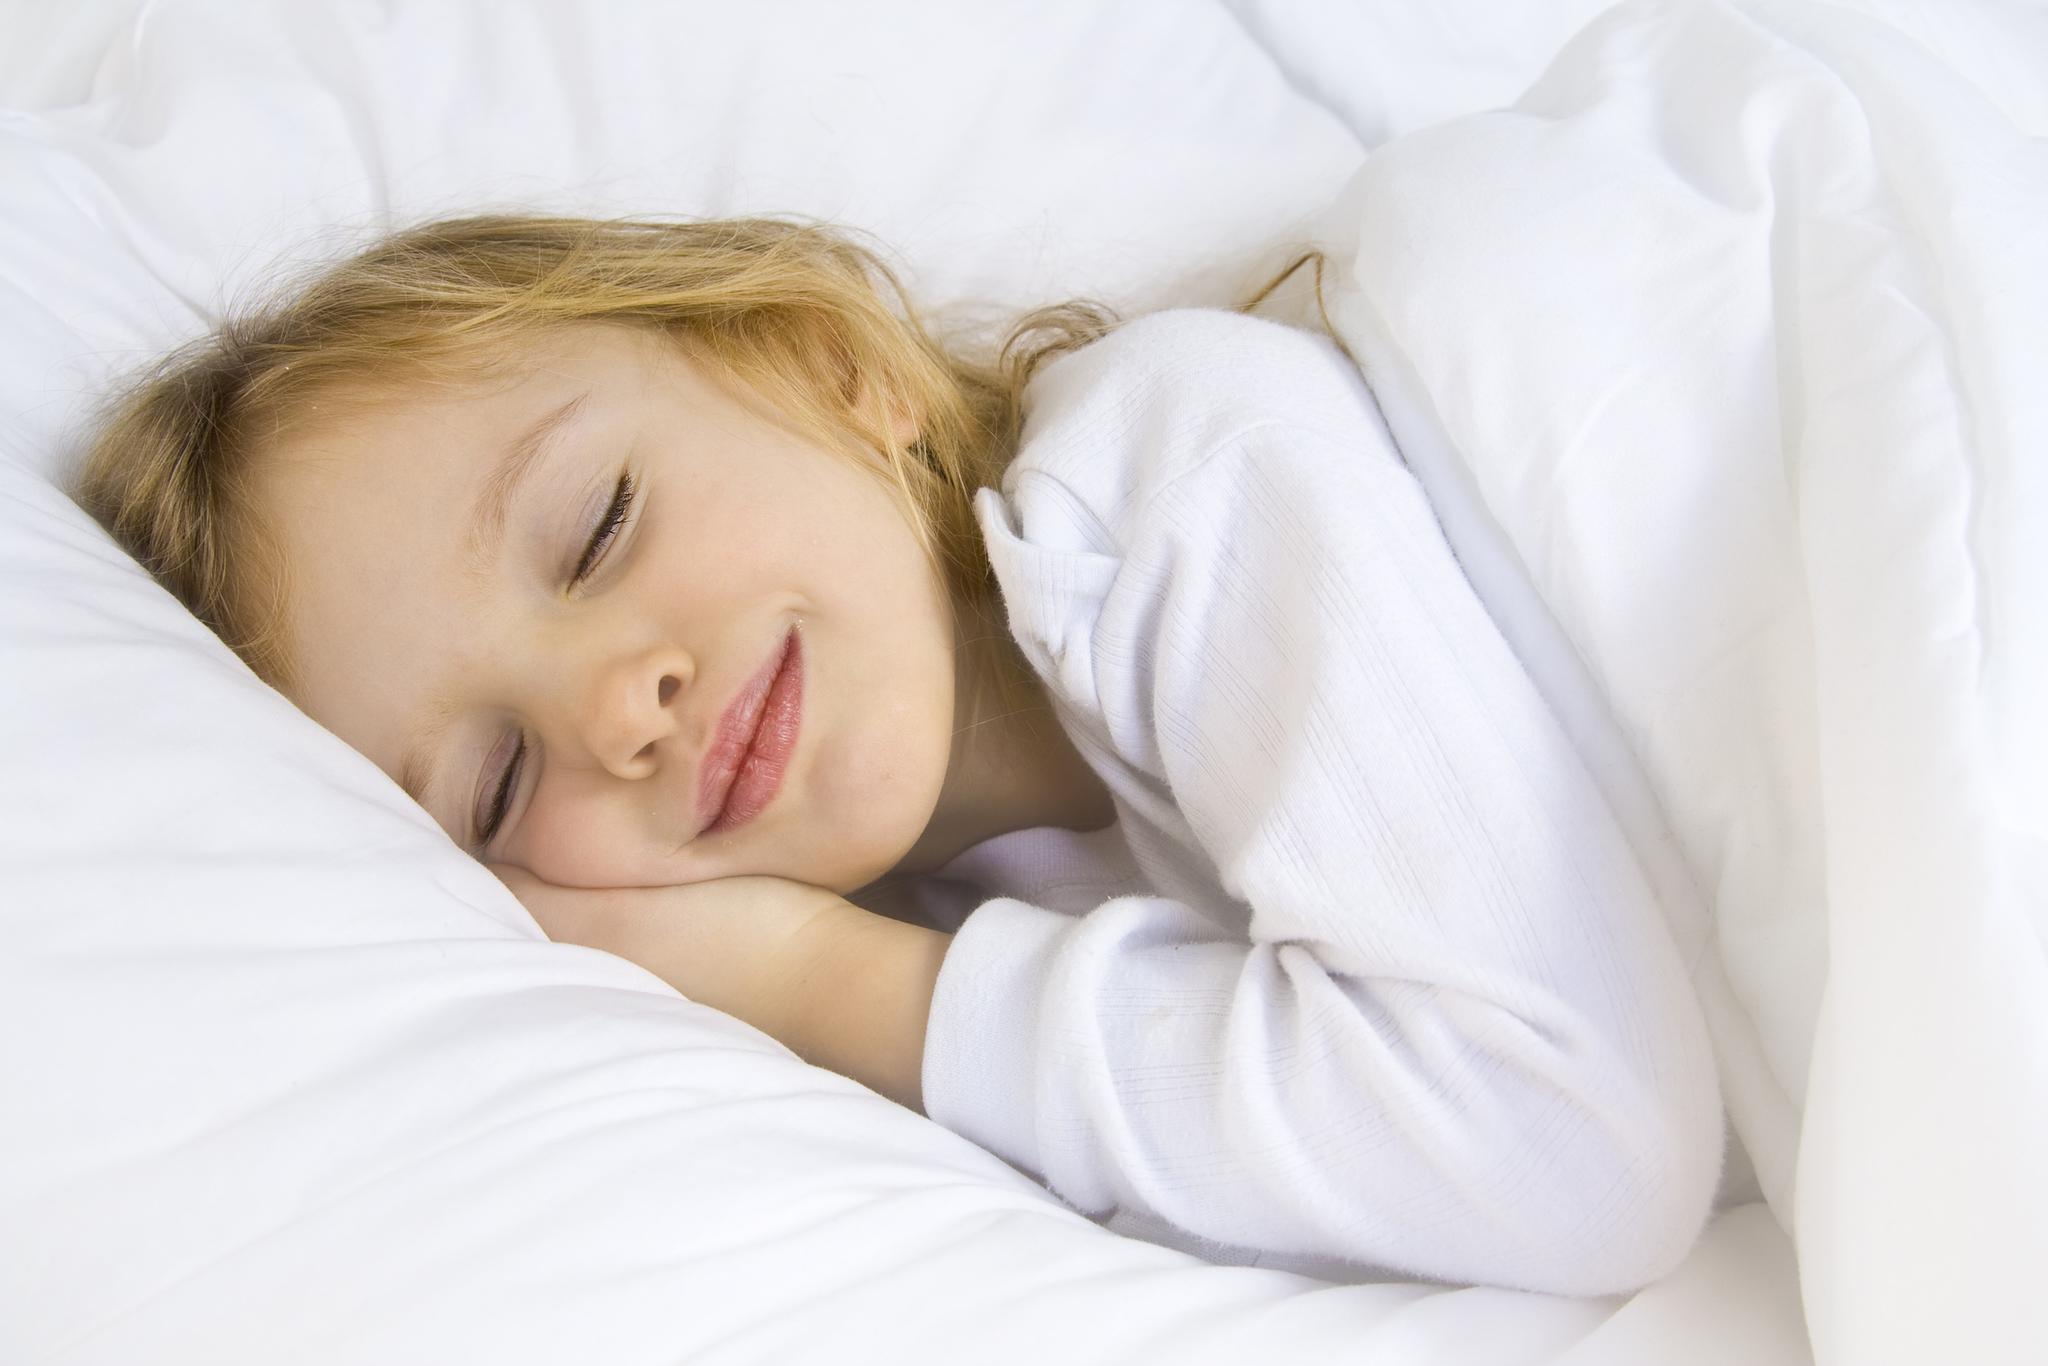 Sweeter Dreams: 10 Steps to Safe Slumber for Kids